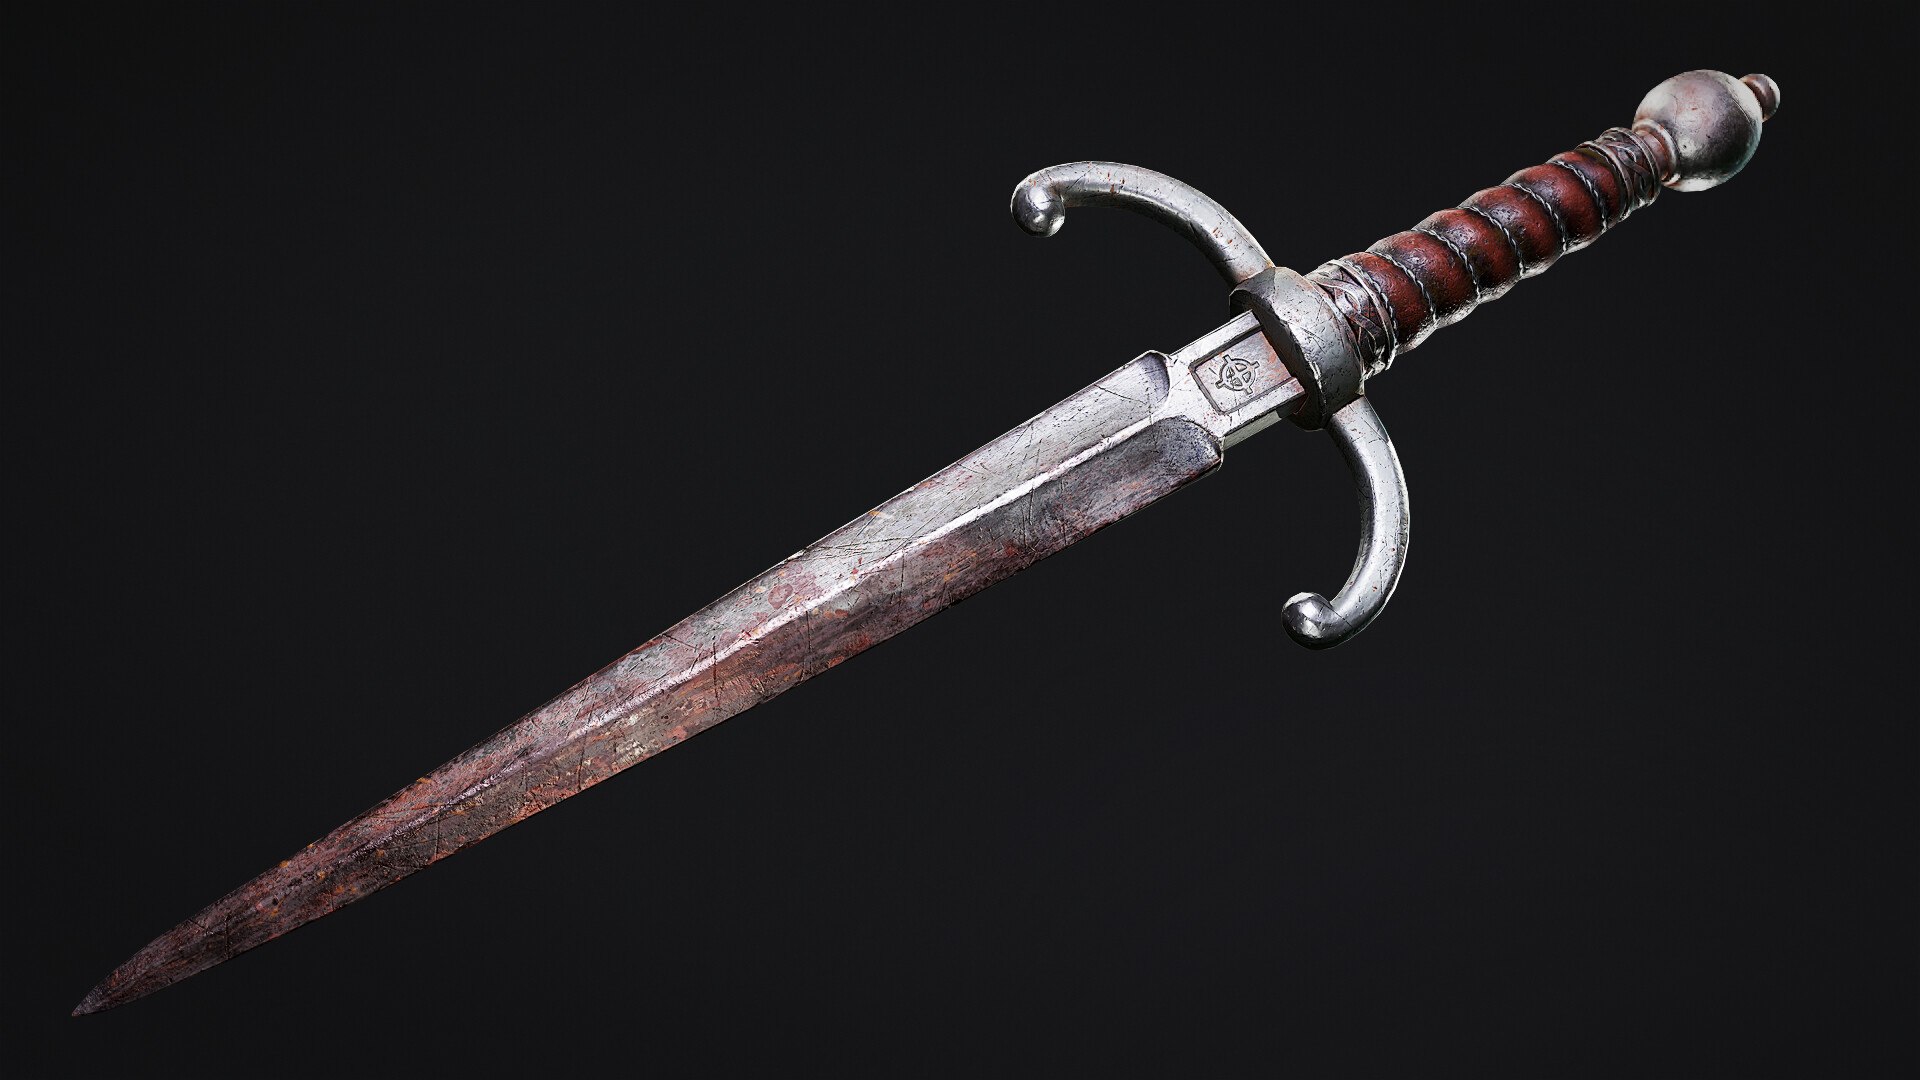 kevin-brunt-medieval-dagger-1920-01.jpg